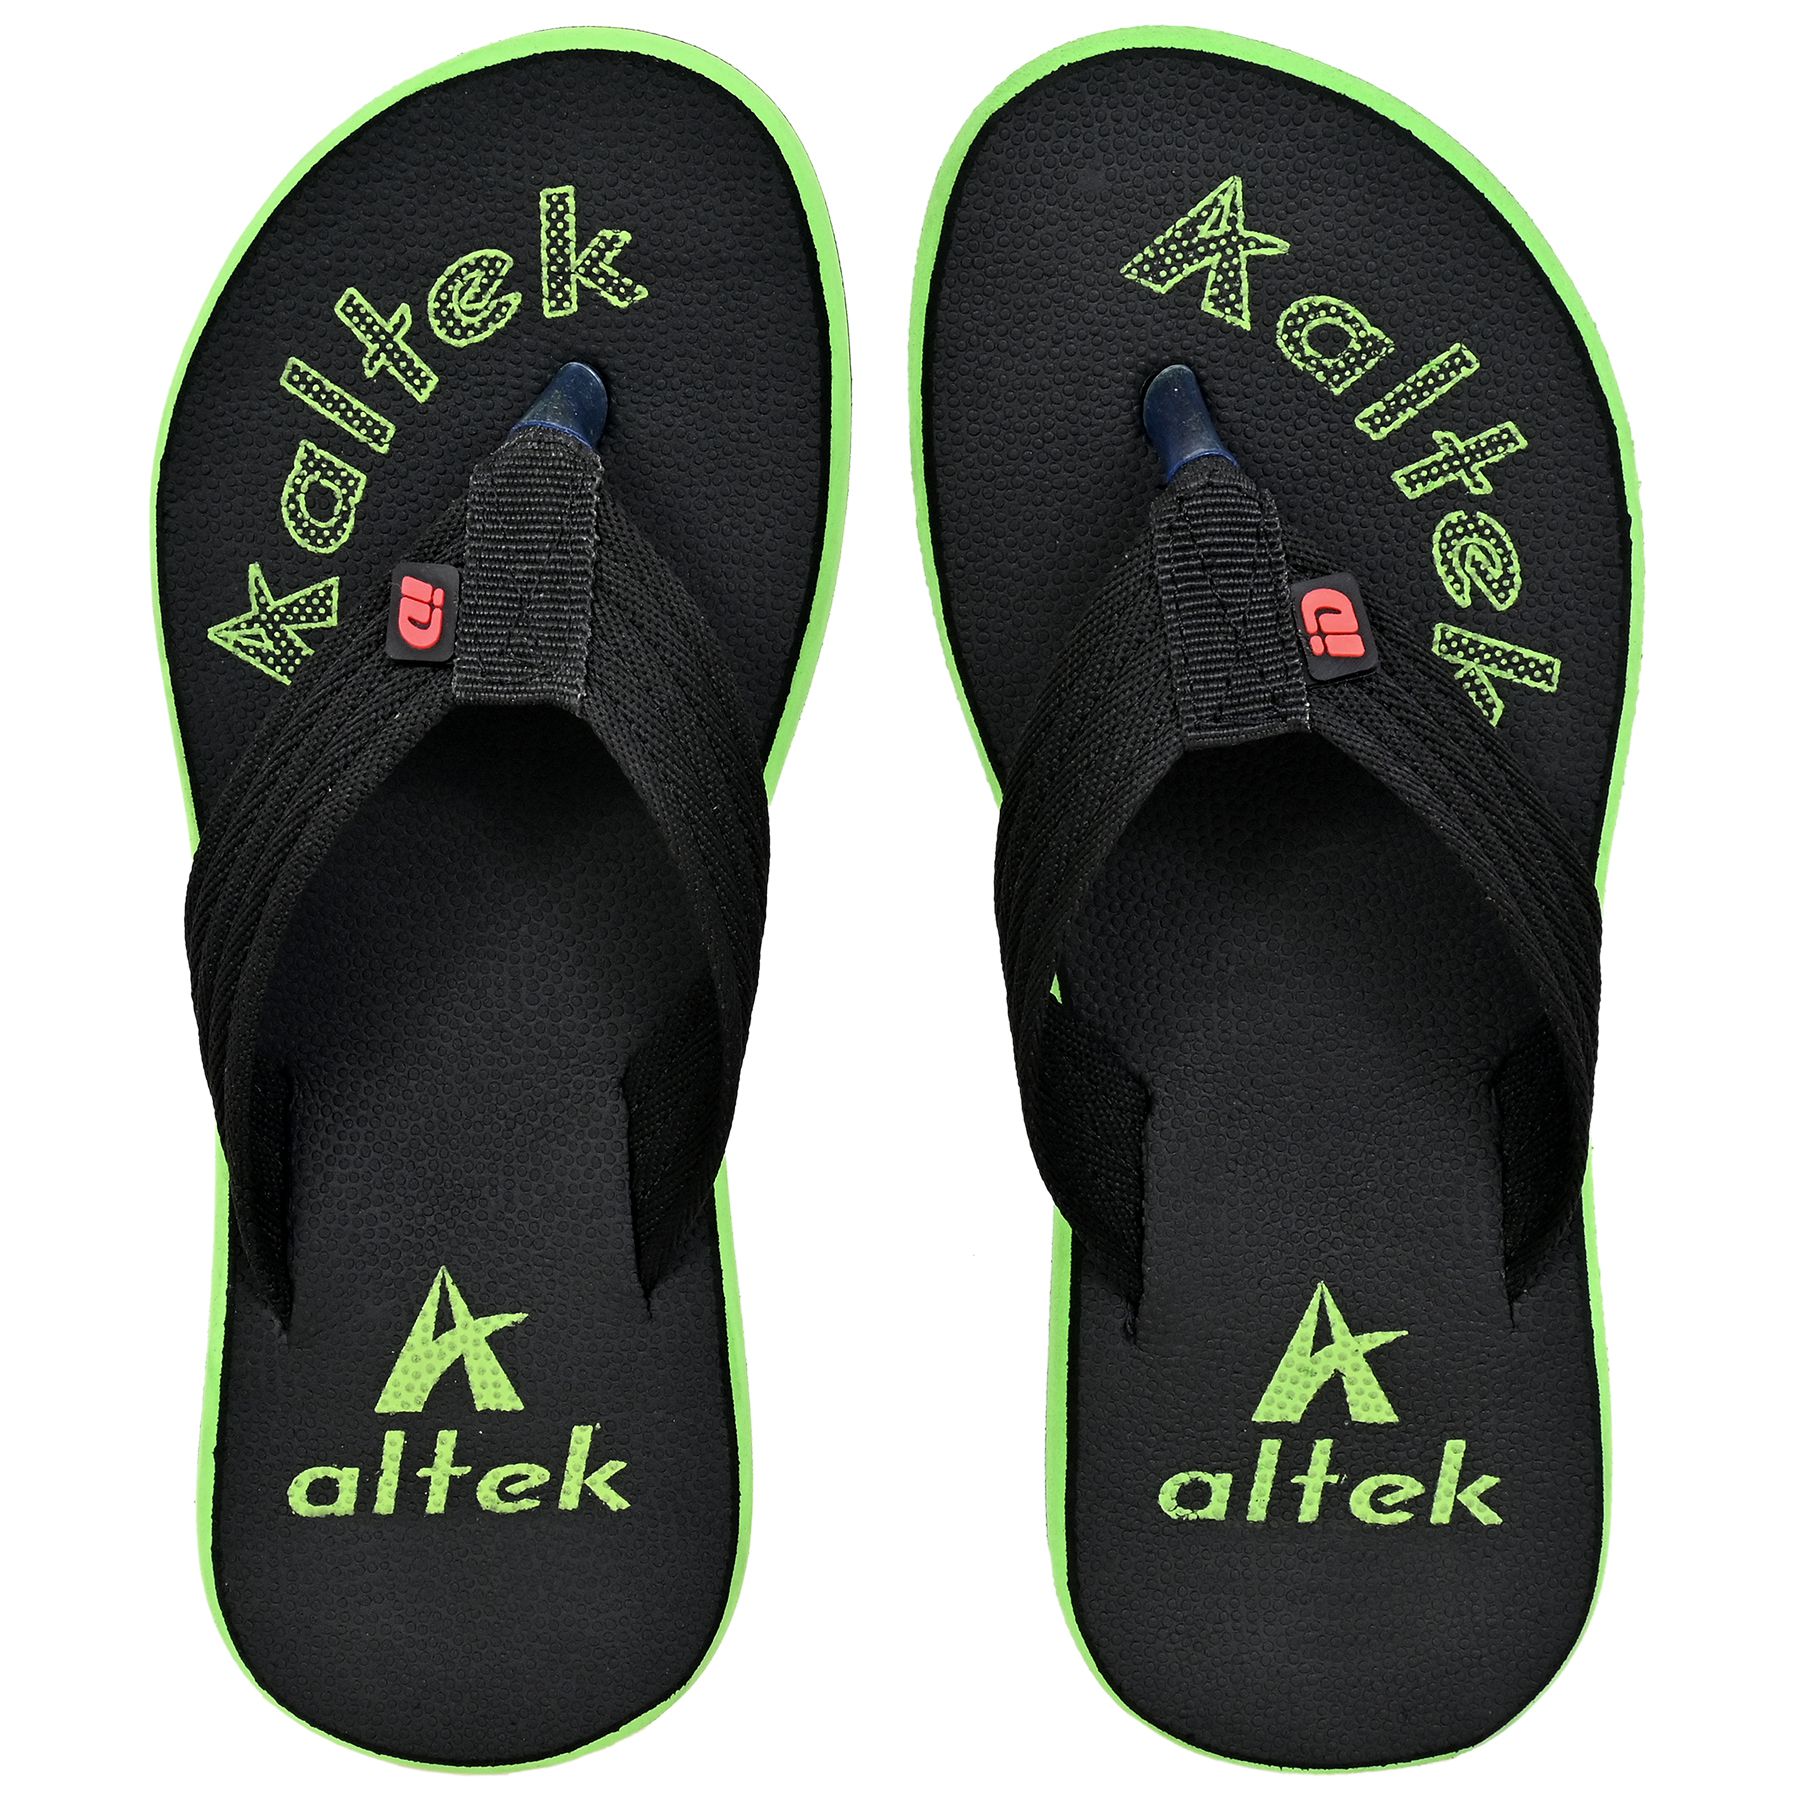     			Altek - Green Men's Thong Flip Flop